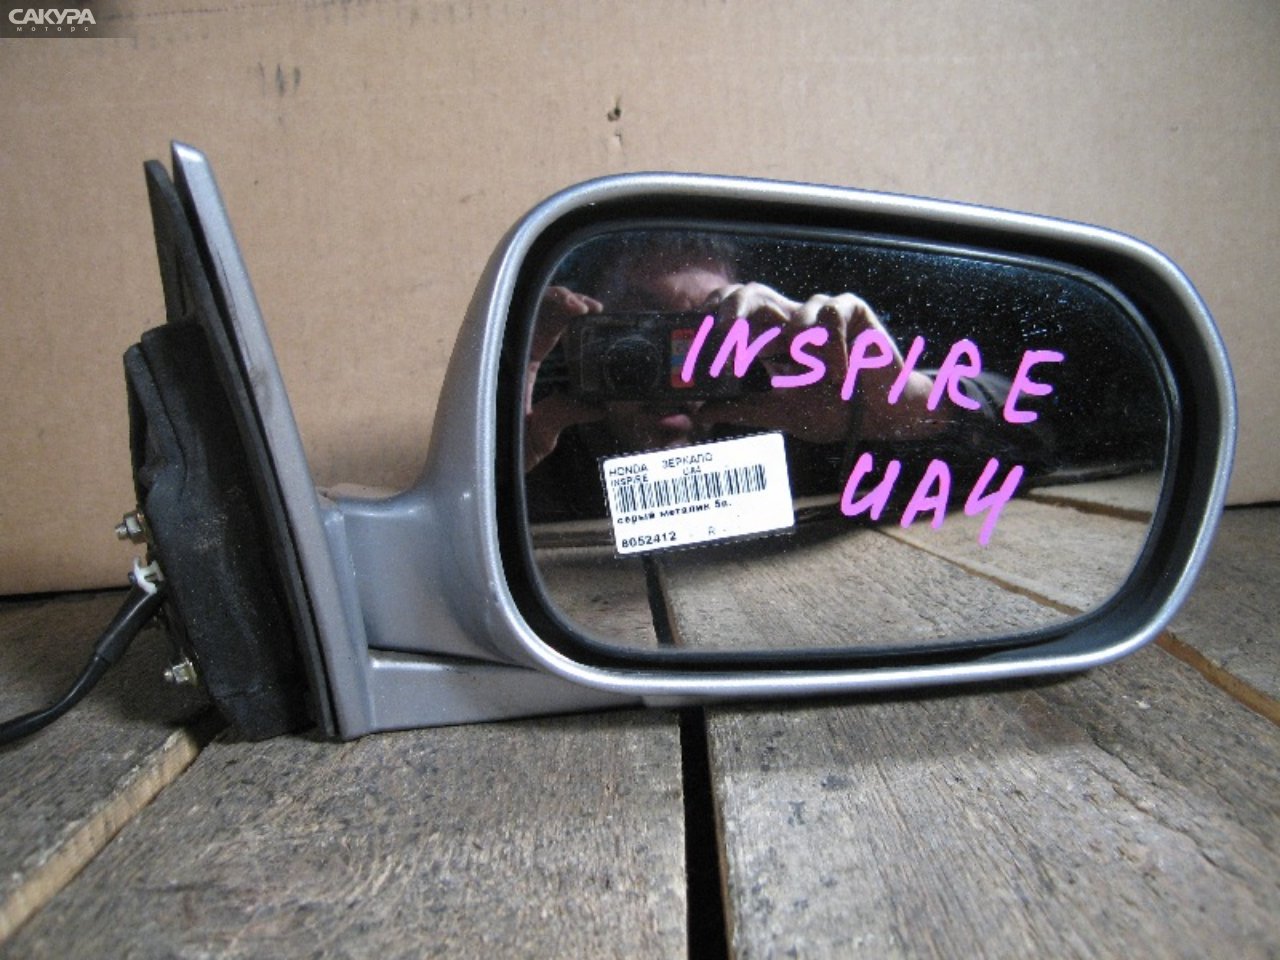 Зеркало боковое правое Honda Inspire UA4: купить в Сакура Абакан.